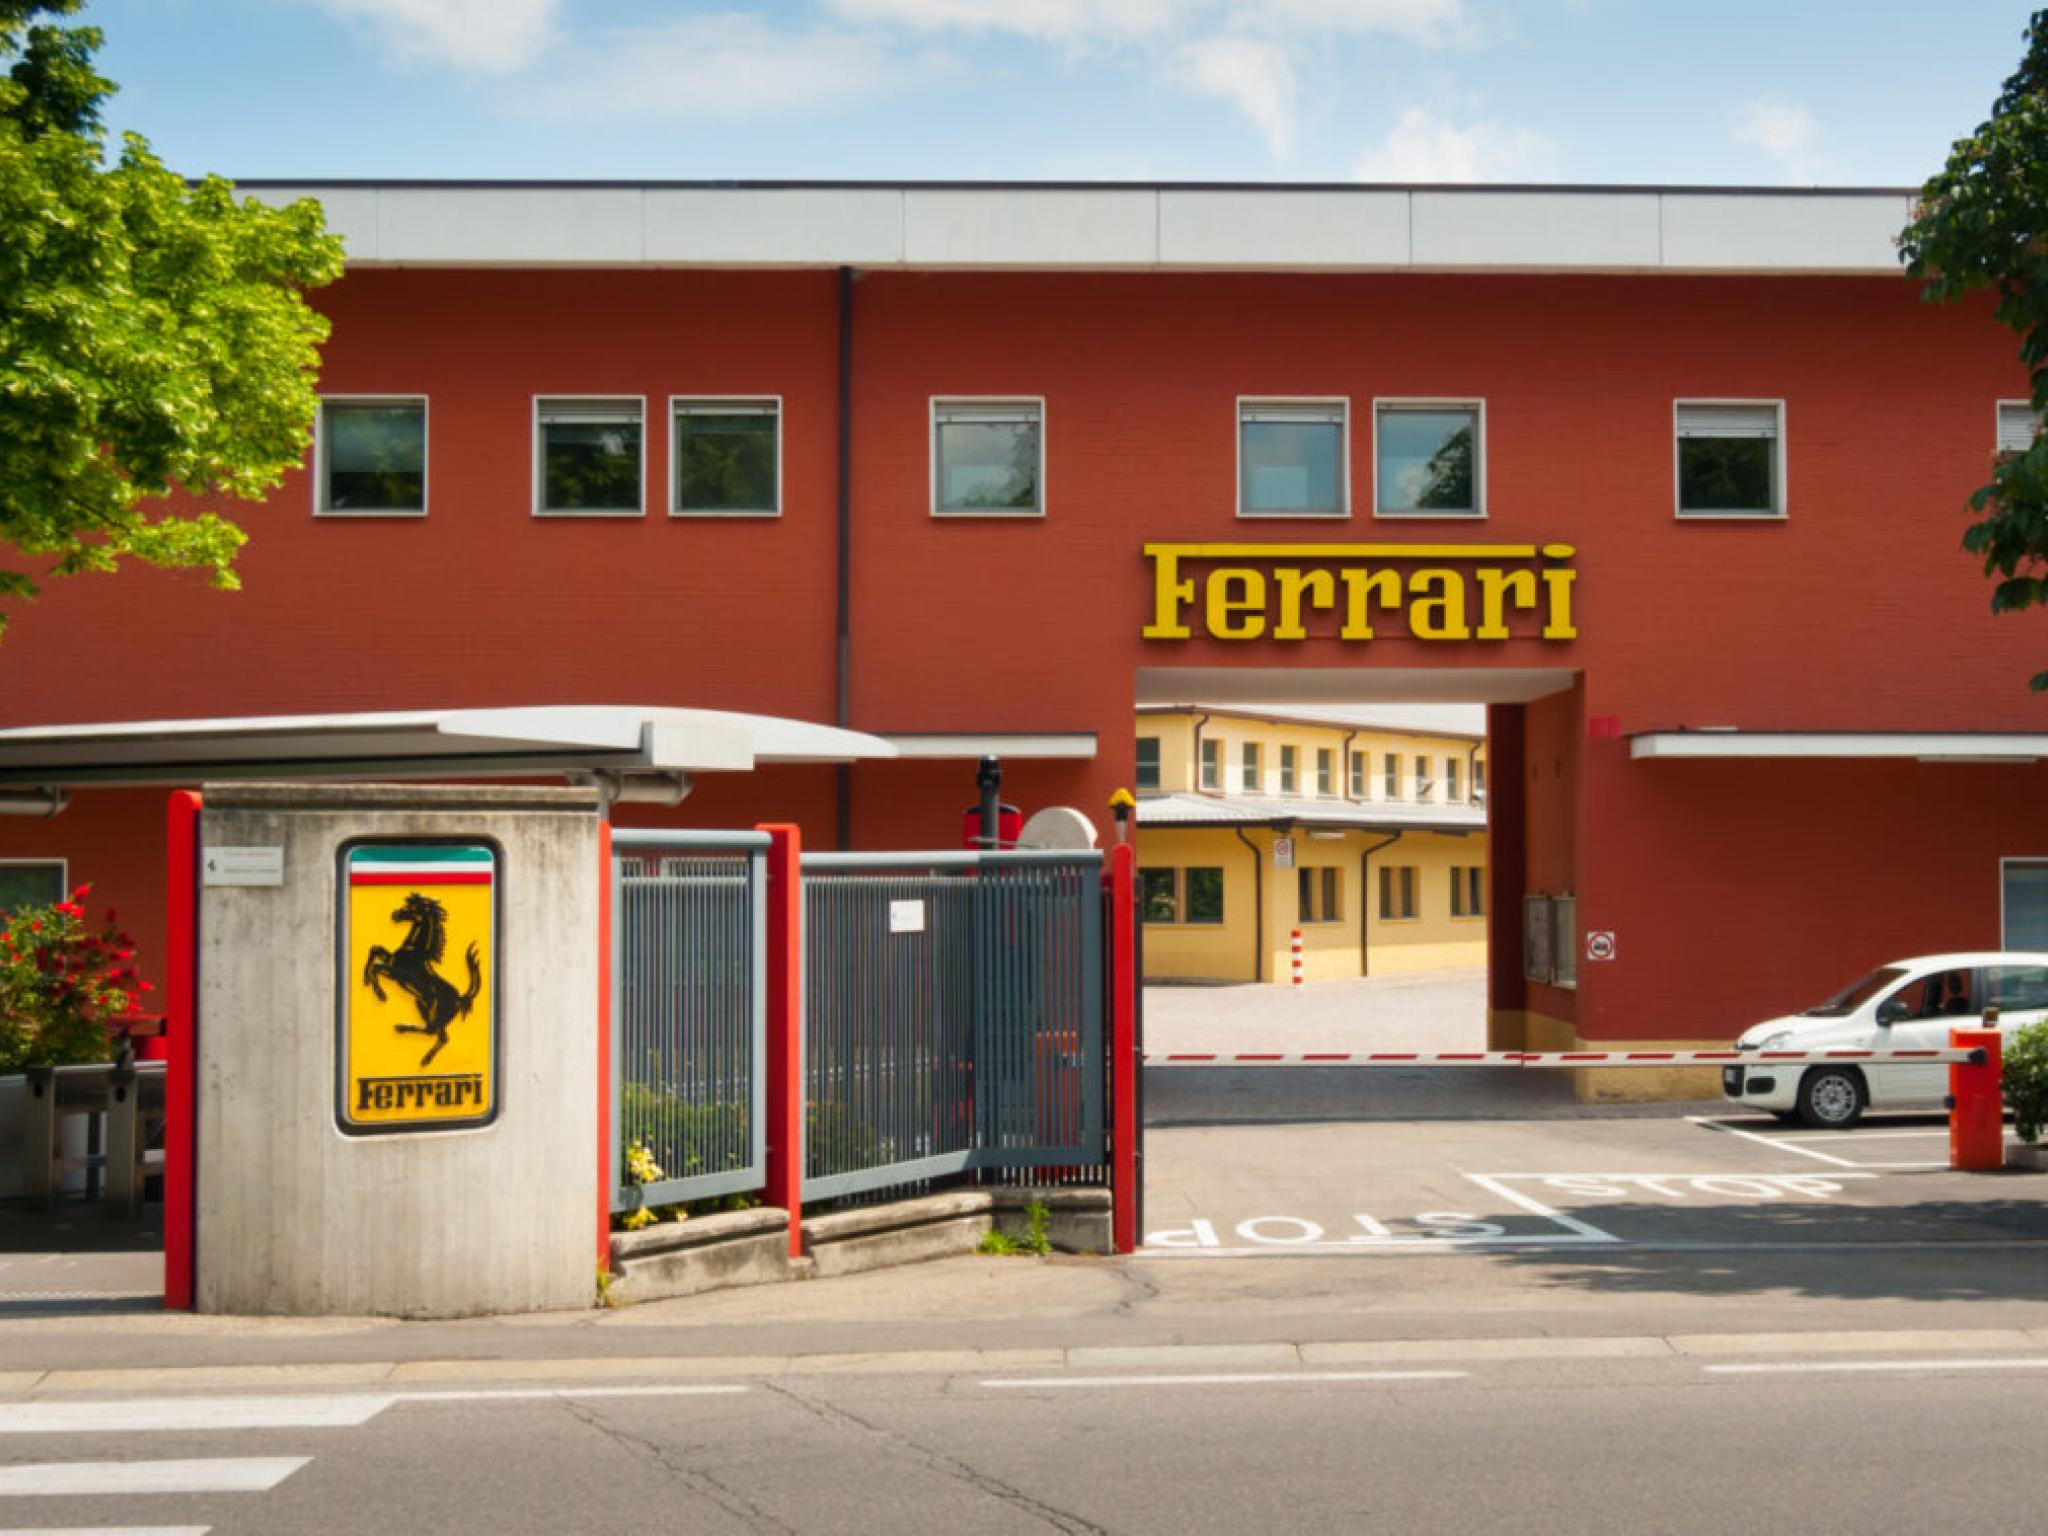  ferrari-faces-lawsuit-in-us-over-brake-defect-report 